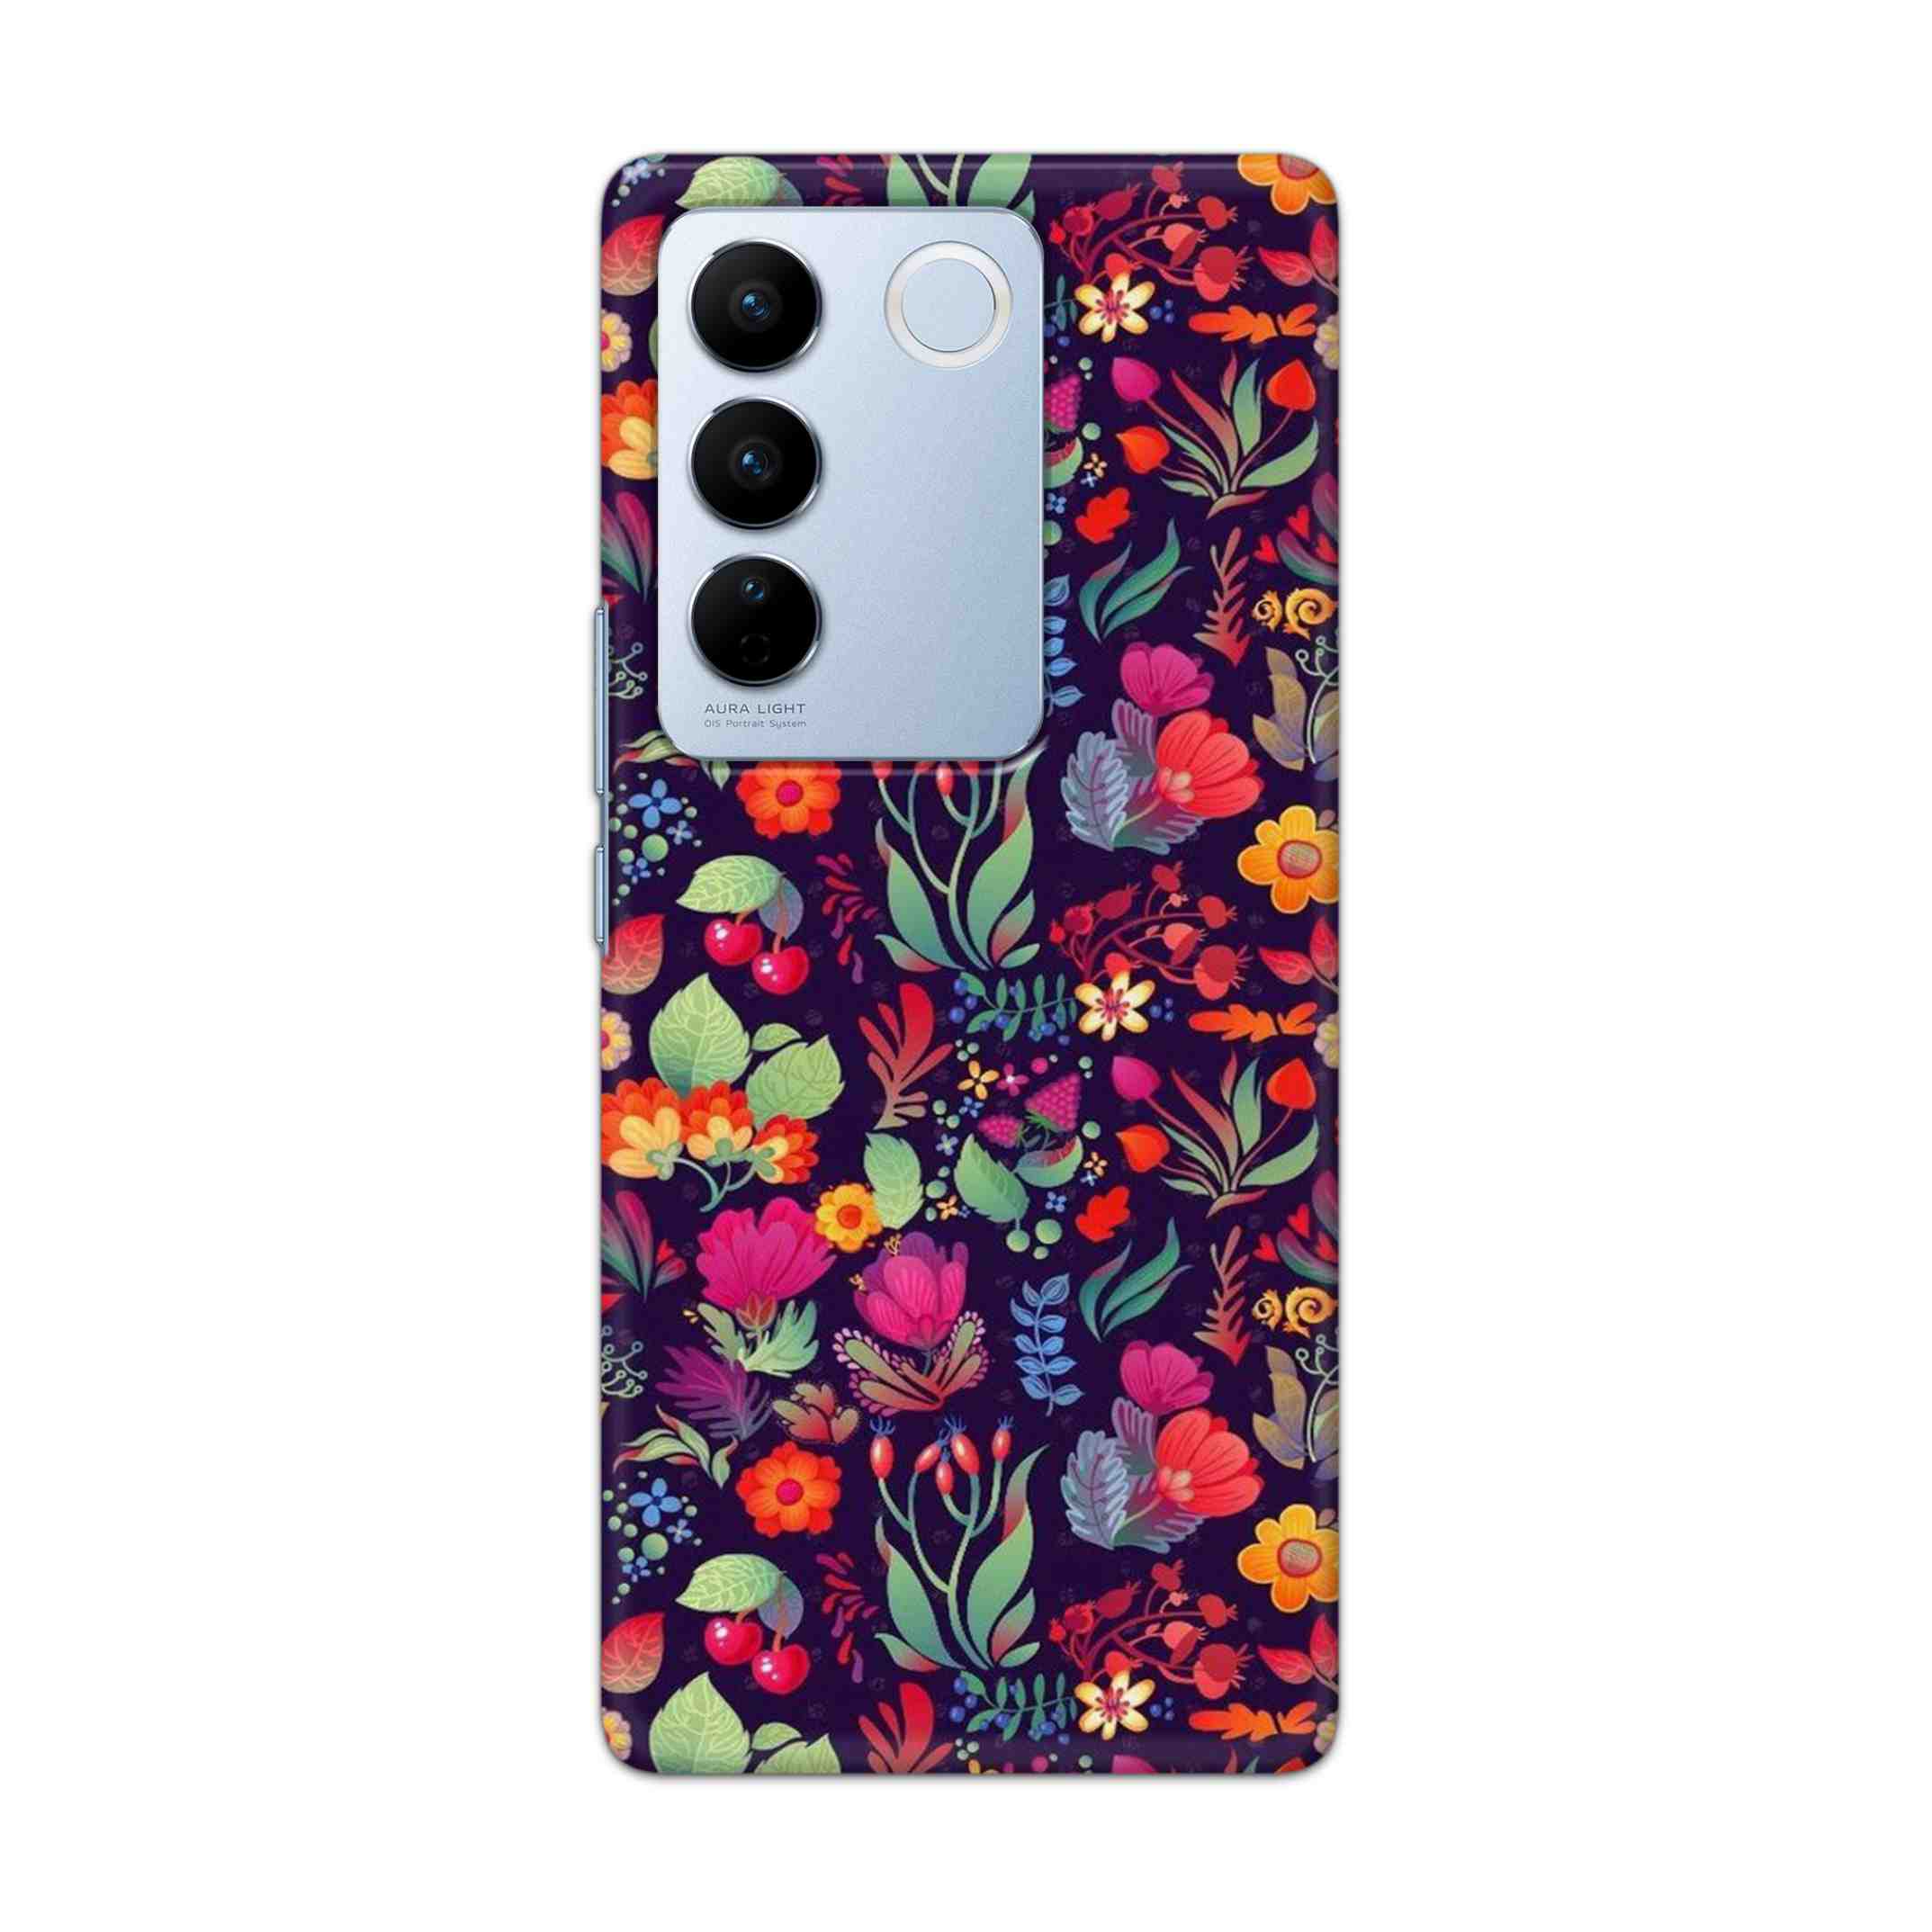 Buy Fruits Flower Hard Back Mobile Phone Case Cover For Vivo V27 Online